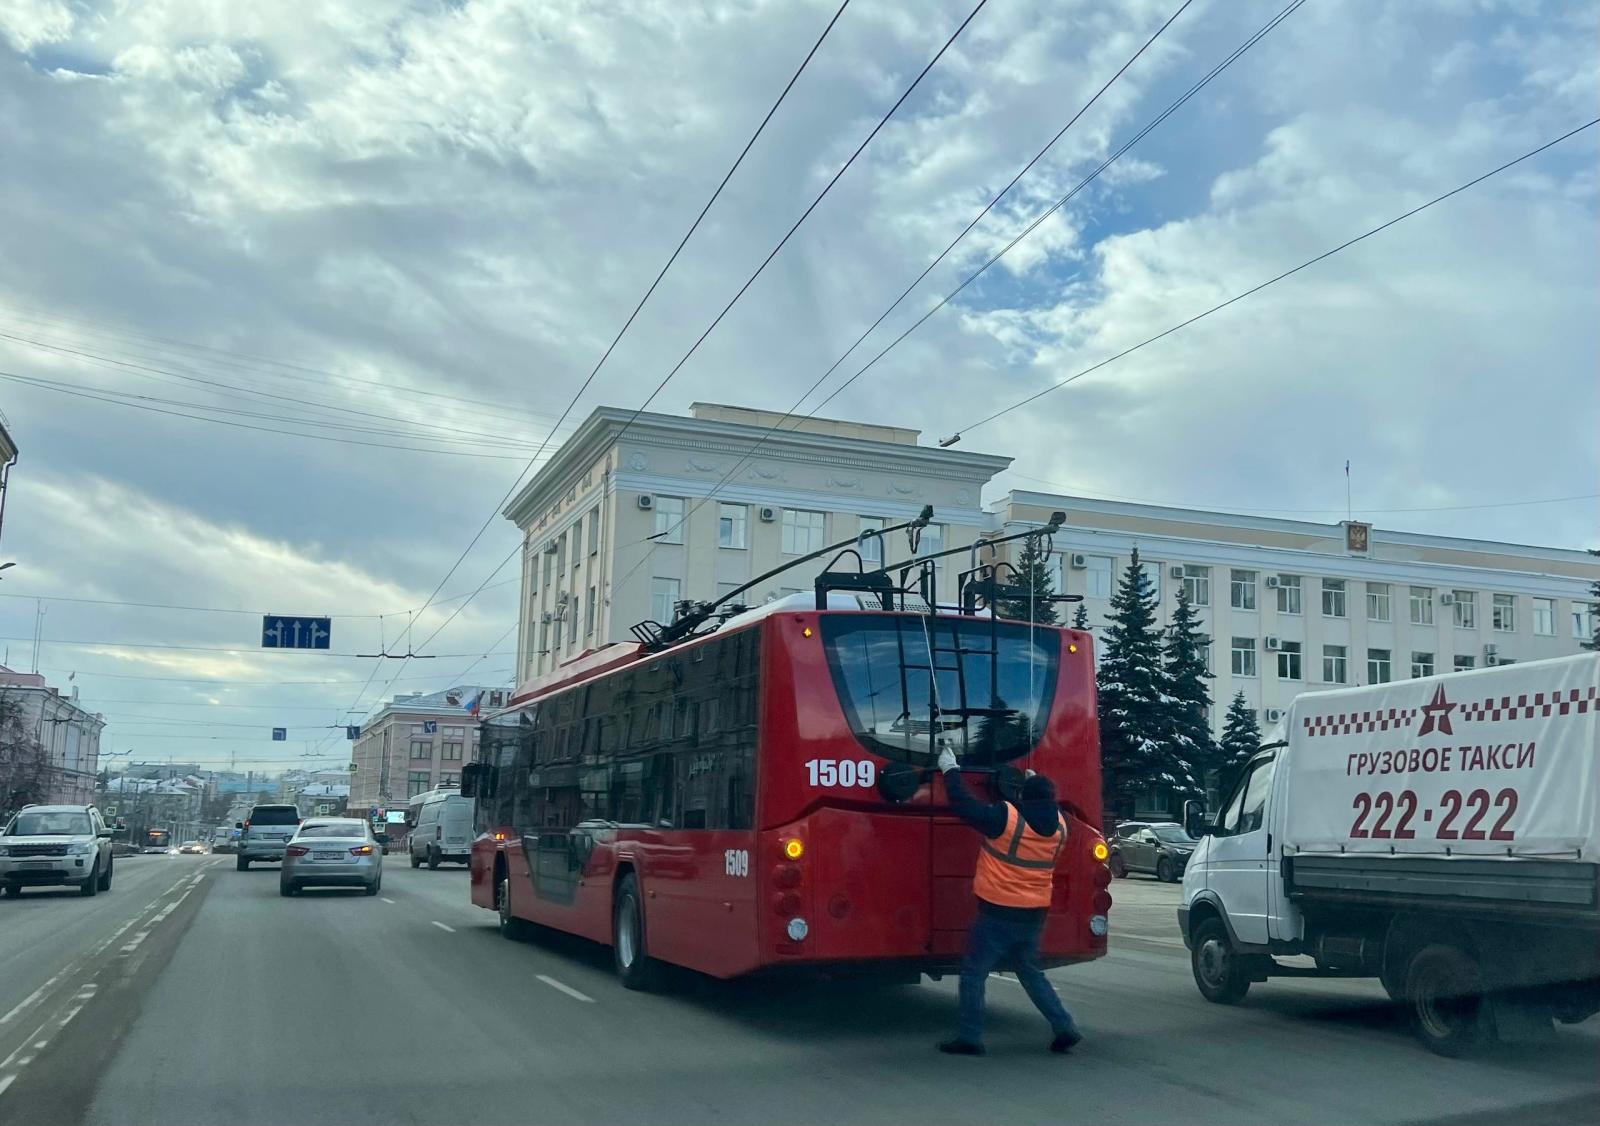 Брянский суд частично удовлетворил иск на 1,6 миллиона рублей к региональному троллейбусному управлению